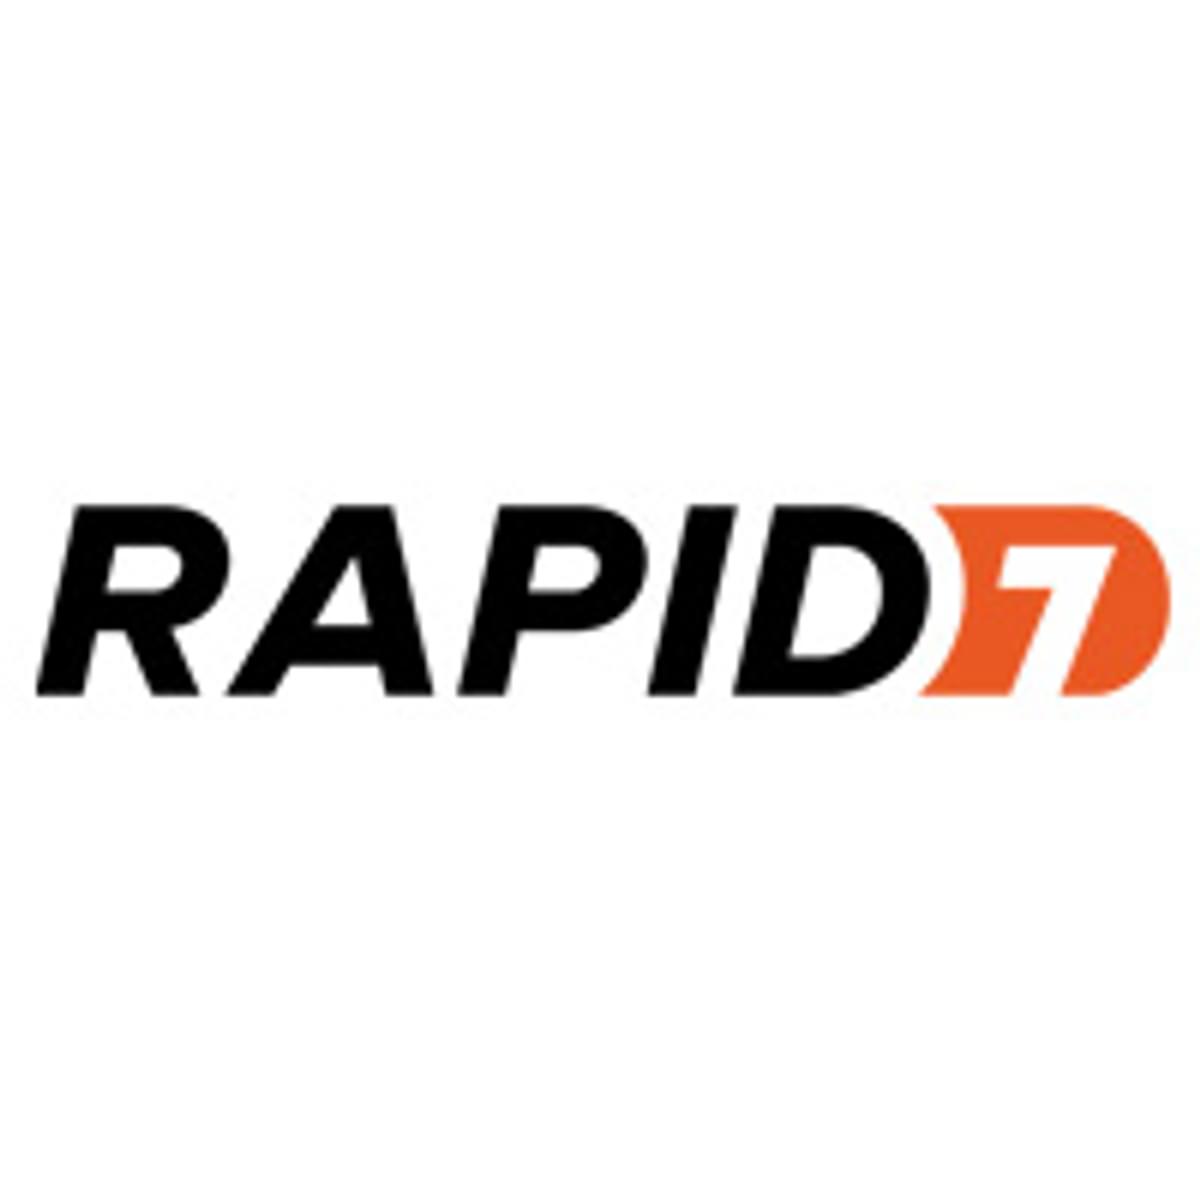 Rapid7 neemt DivvyCloud over image